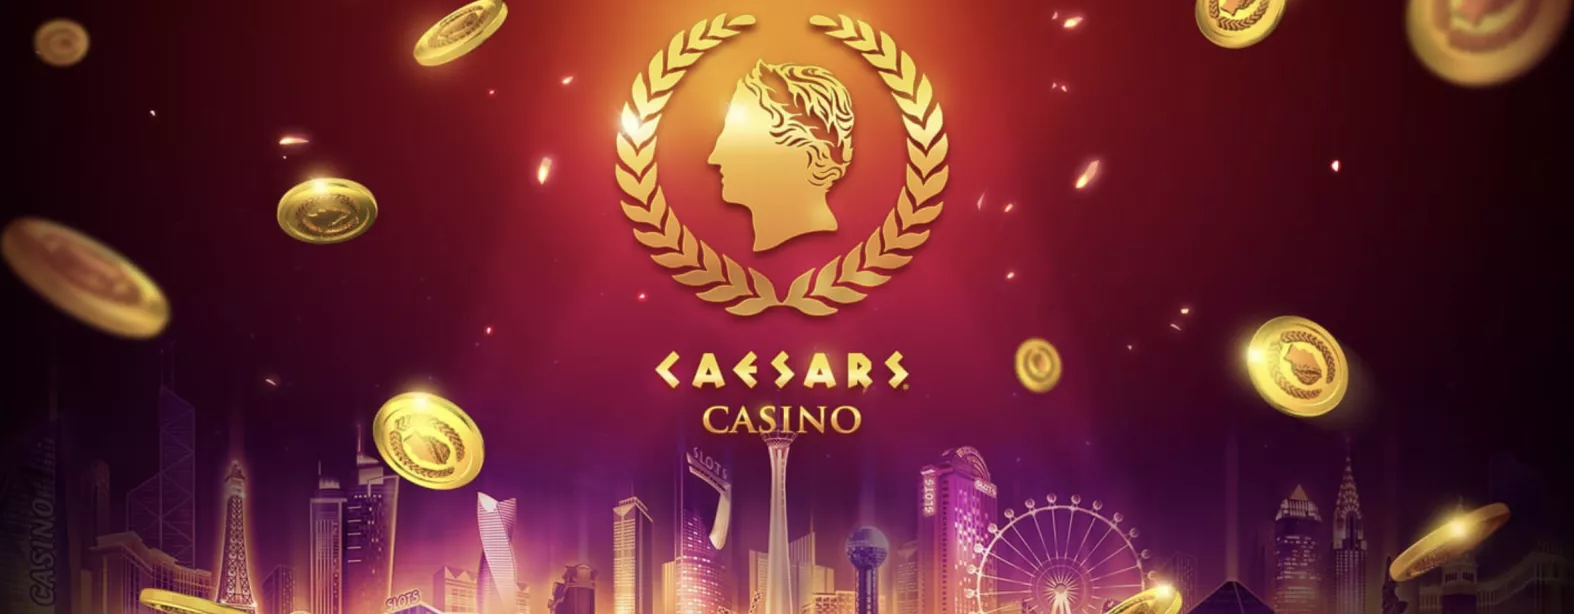 caesars online casino games